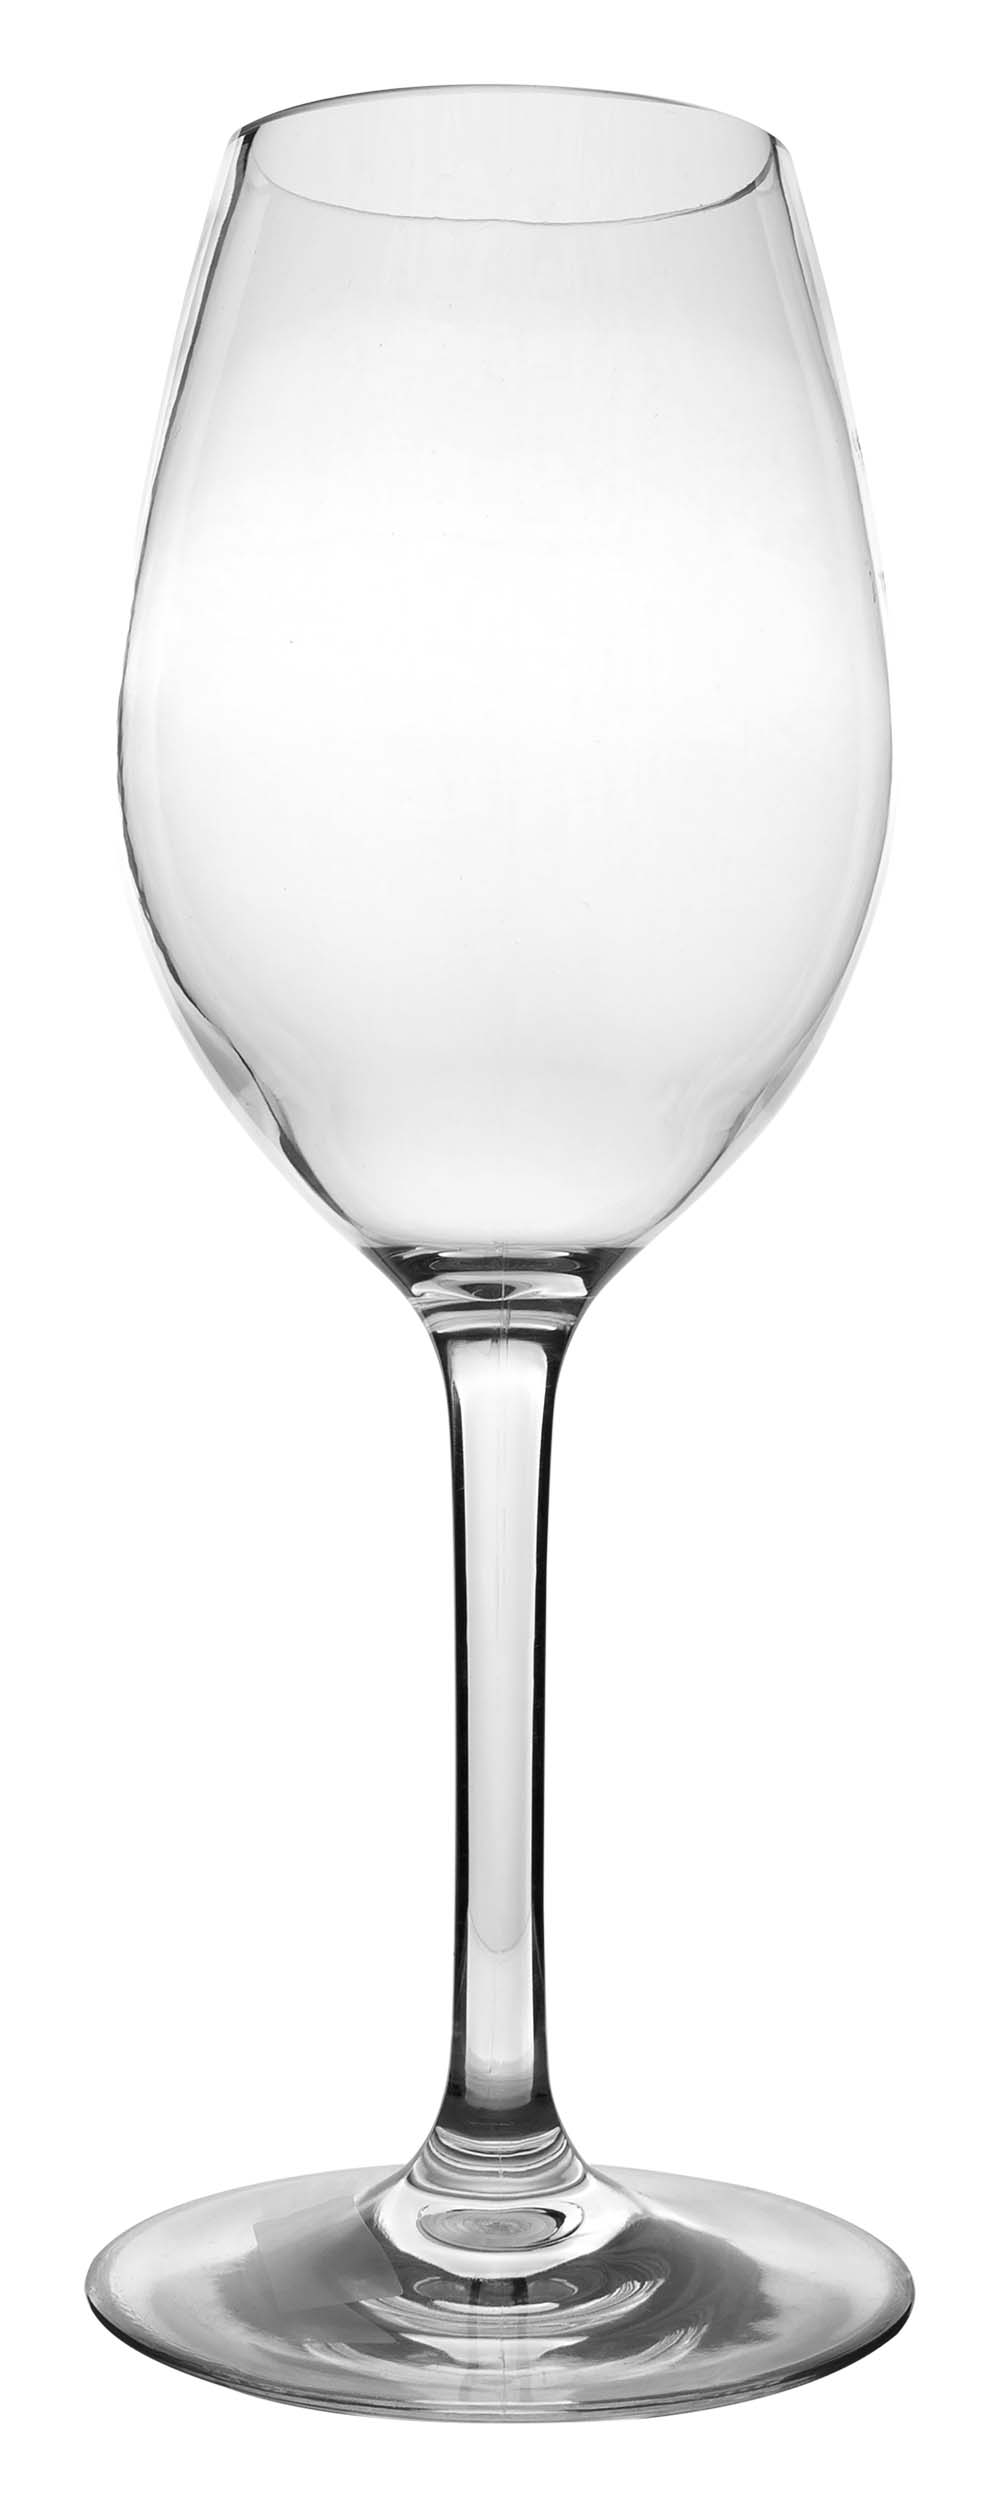 6101461 Een vrijwel onbreekbaar luxe witte wijnglas met een rond en stijlvol design. Vaatwasmachinebestendig, lichtgewicht en nog beter krasbestendig. Gemaakt van sterk tritan. Een set van 2 glazen. De glazen zijn BPA vrij.